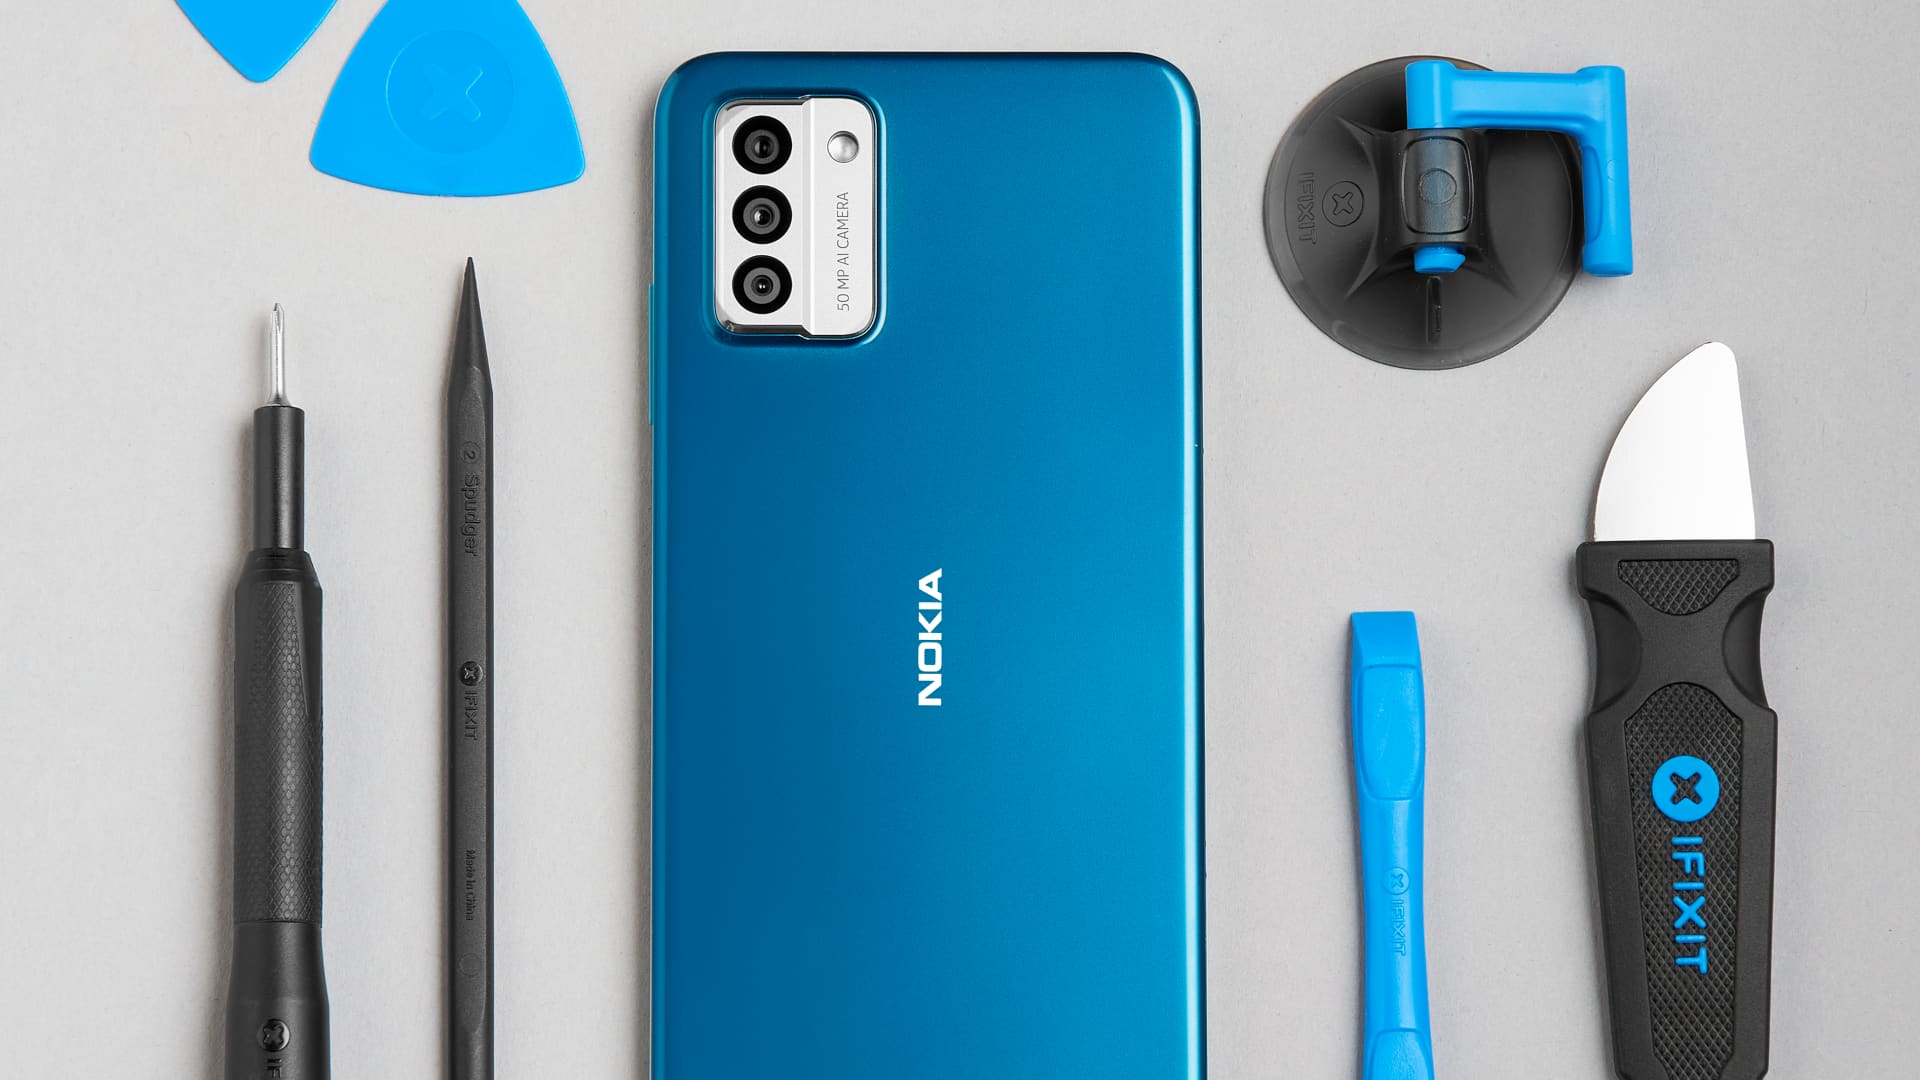 Nokia G22 smartphone là một sản phẩm mới nhất của thương hiệu Nokia. Điện thoại thông minh này được trang bị nhiều tính năng tiên tiến như camera chụp ảnh đẹp, bộ nhớ lưu trữ rộng và pin bền. Hãy xem hình ảnh của chúng tôi để khám phá thêm về Nokia G22 và những tính năng của nó!